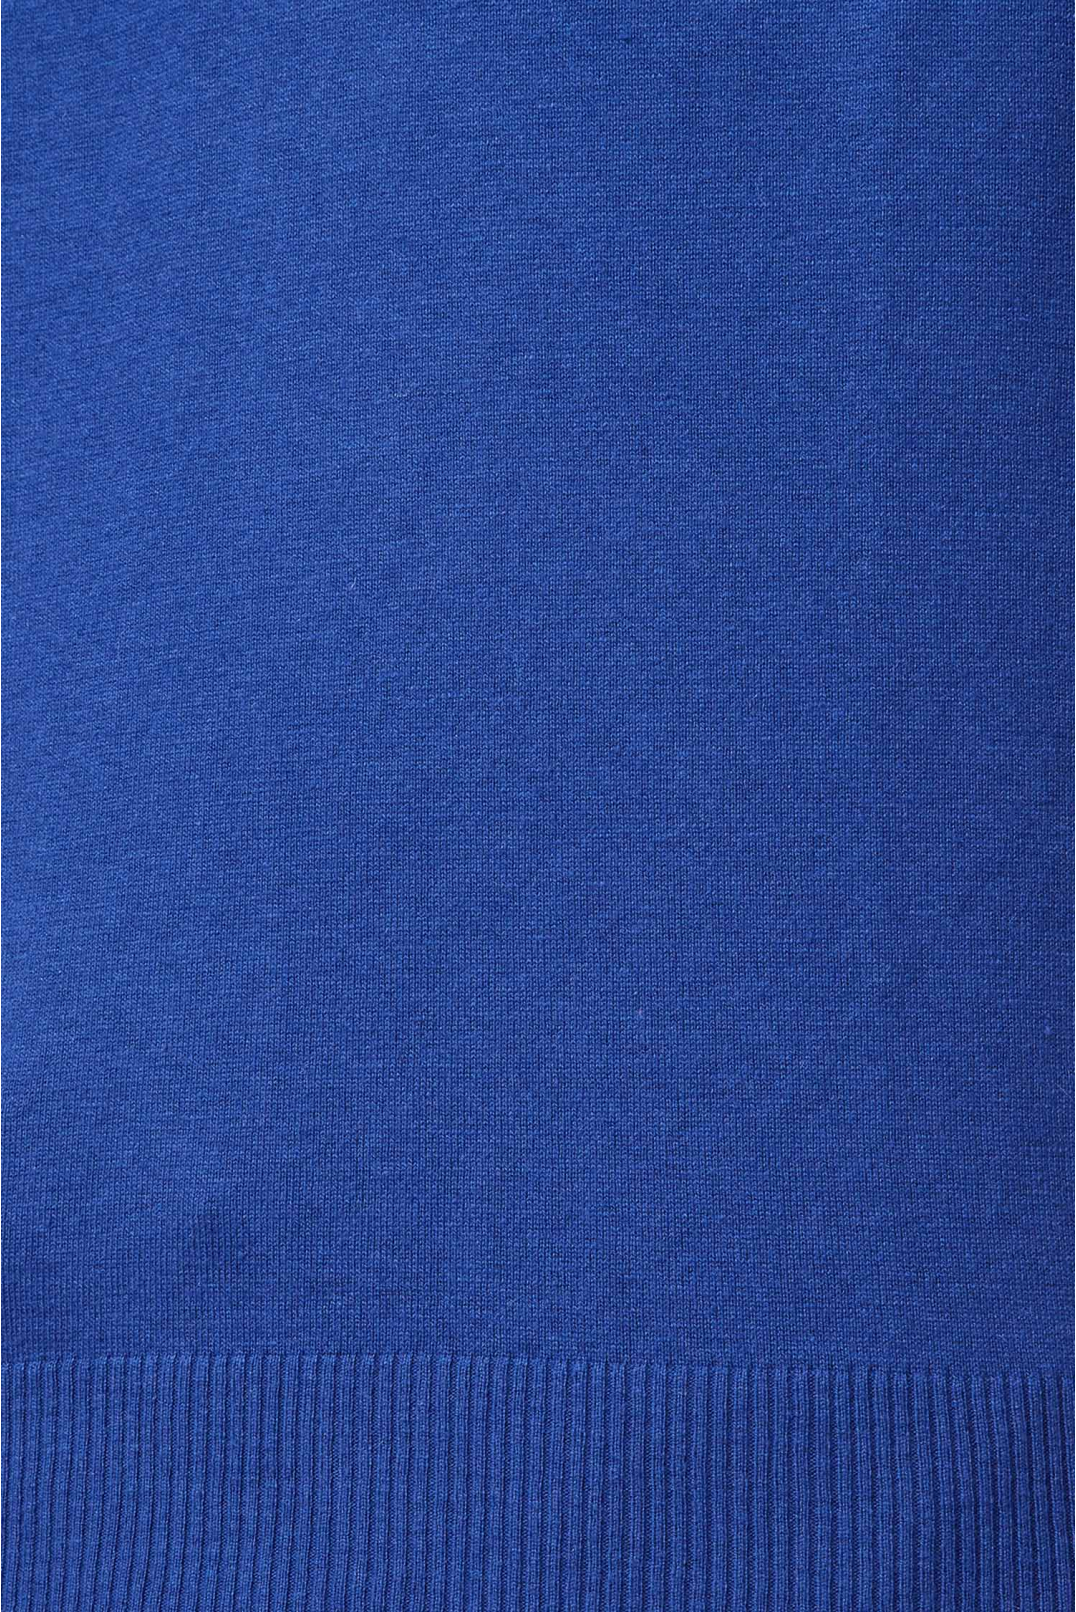 Мужское синее шелковое поло - 3